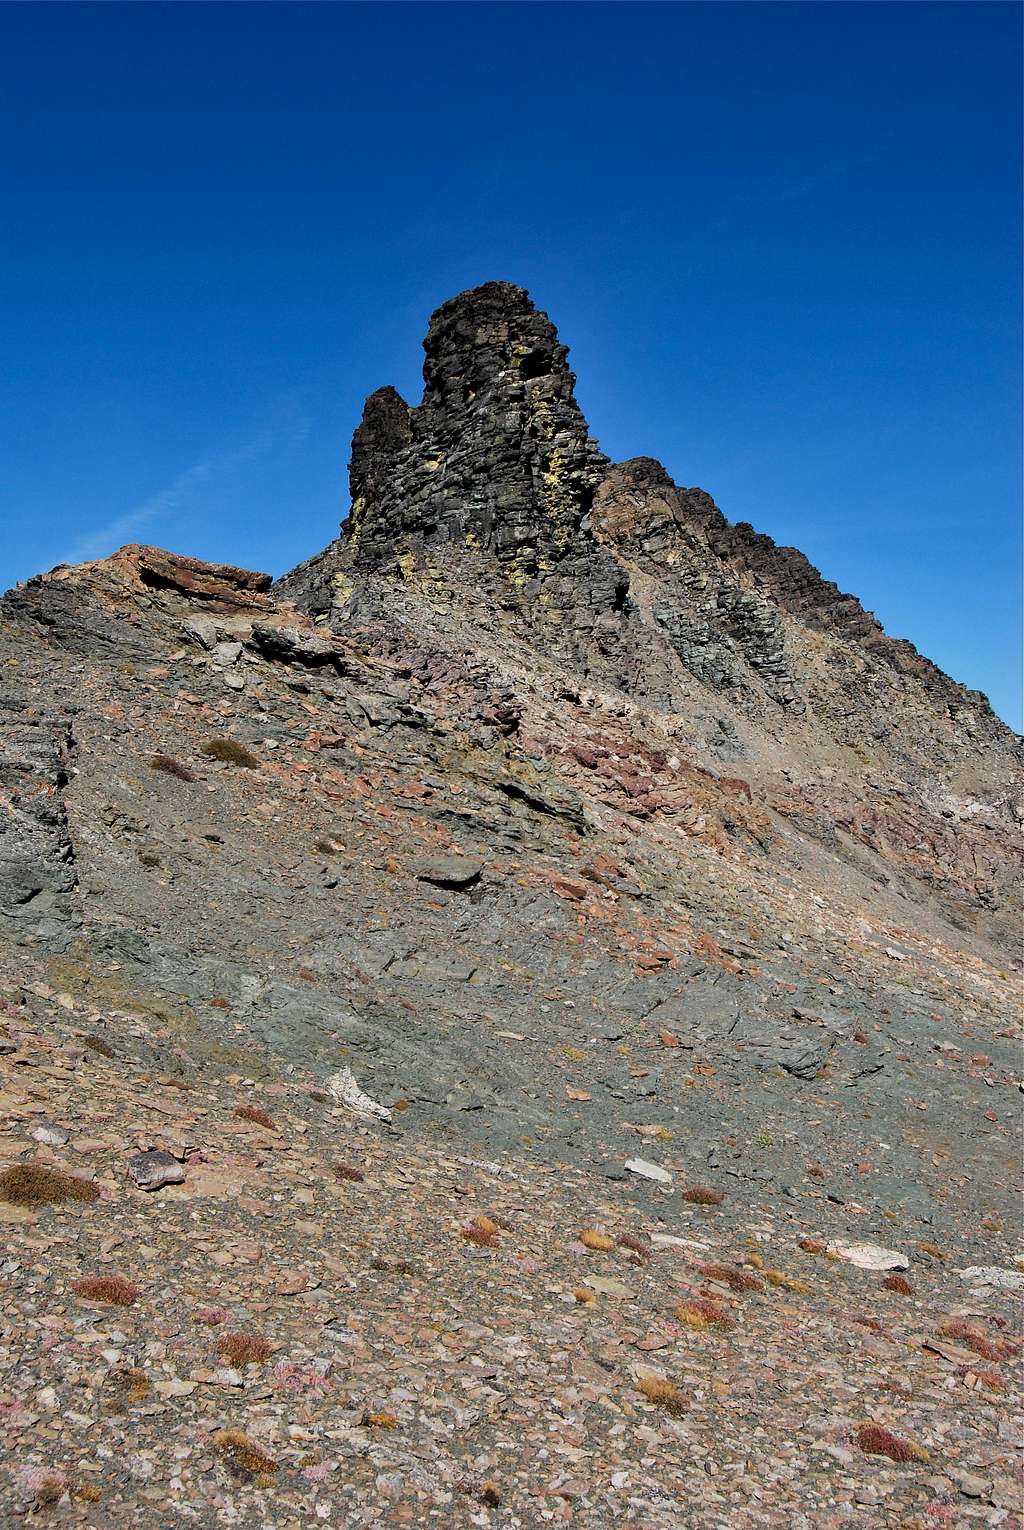 Summit Mountain spire